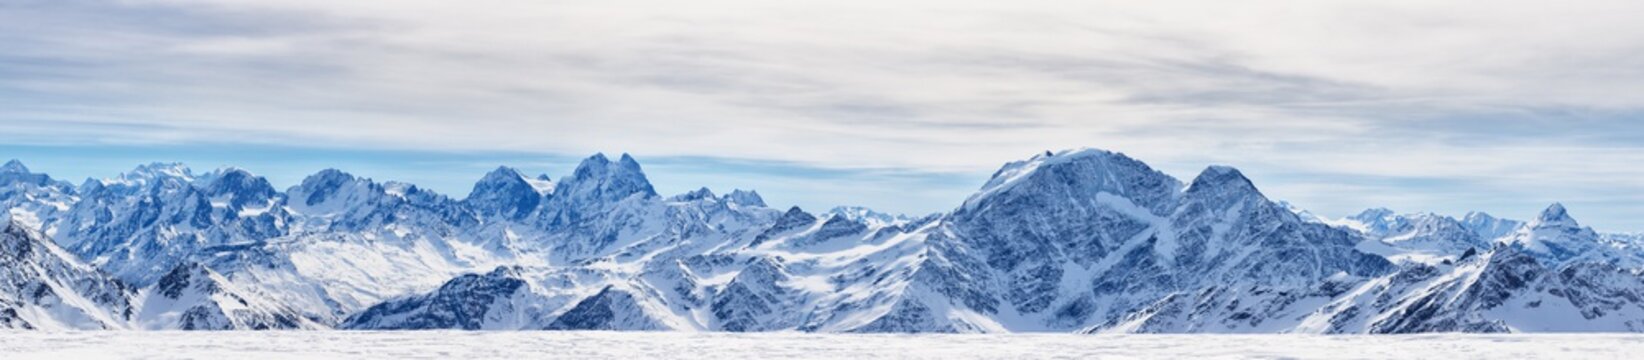 Fototapeta Panoramiczny widok na północne góry Kaukazu